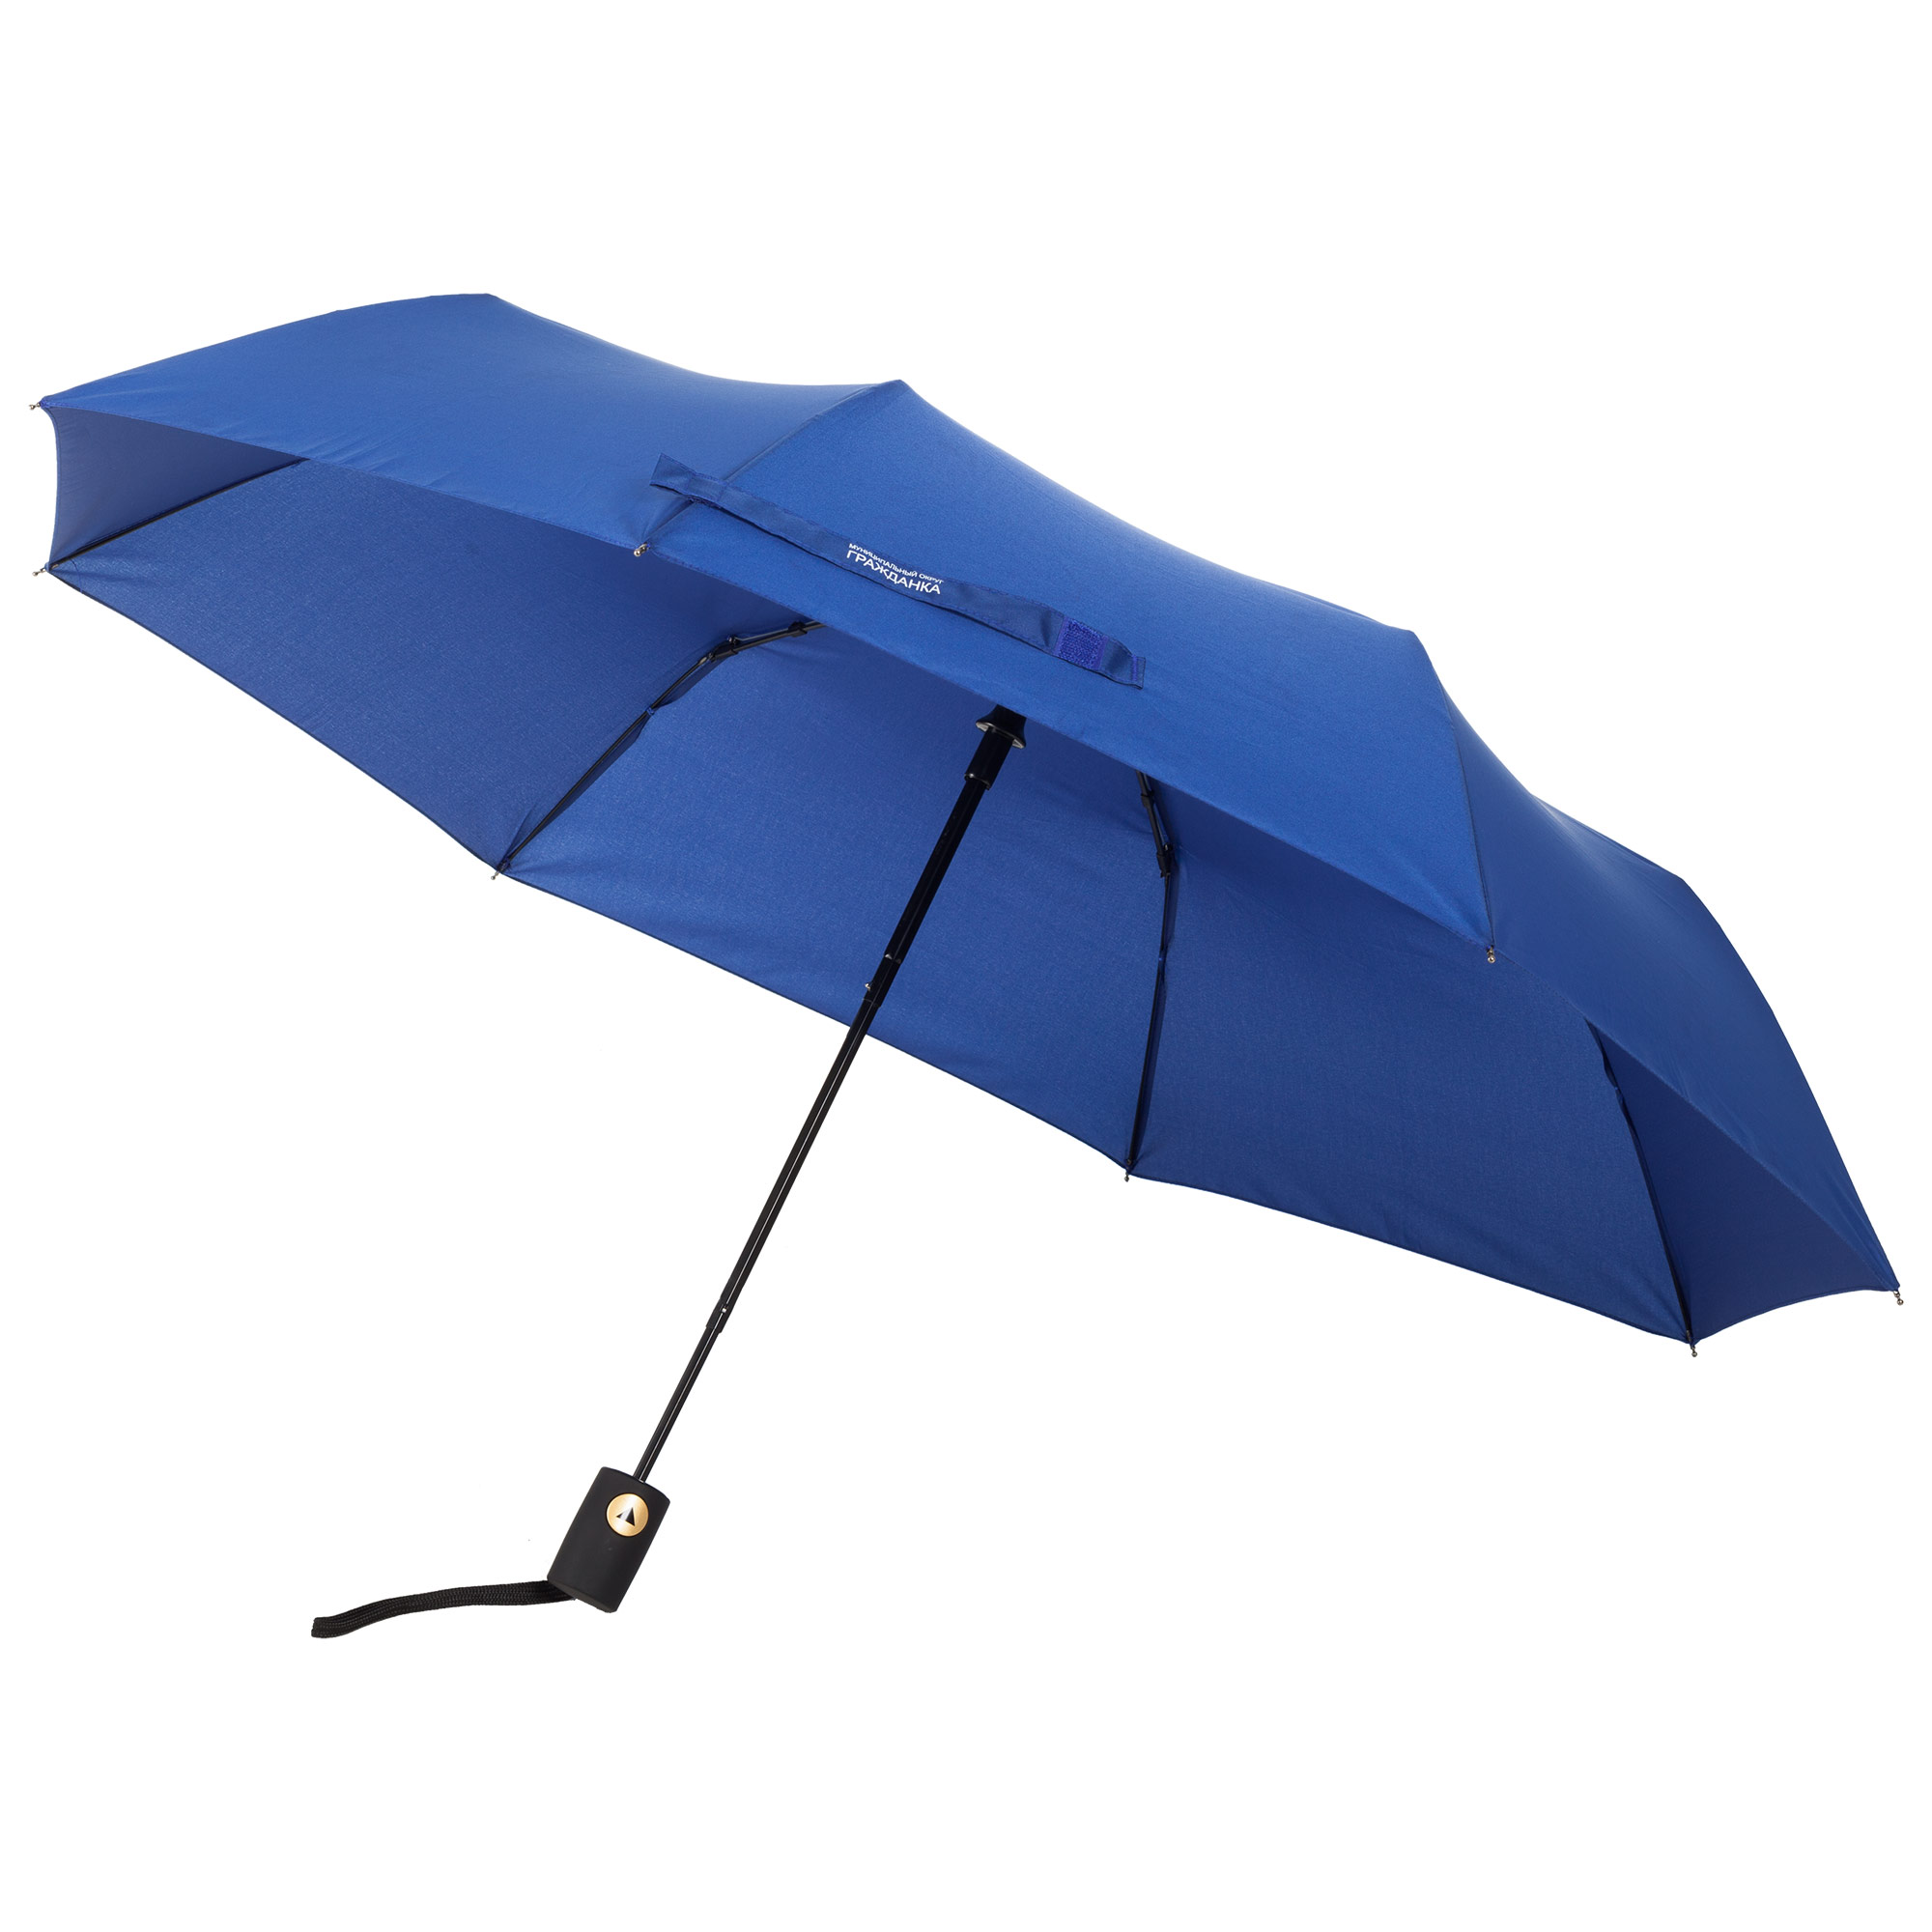 Пример зонта с печатью проявляющегося изображения